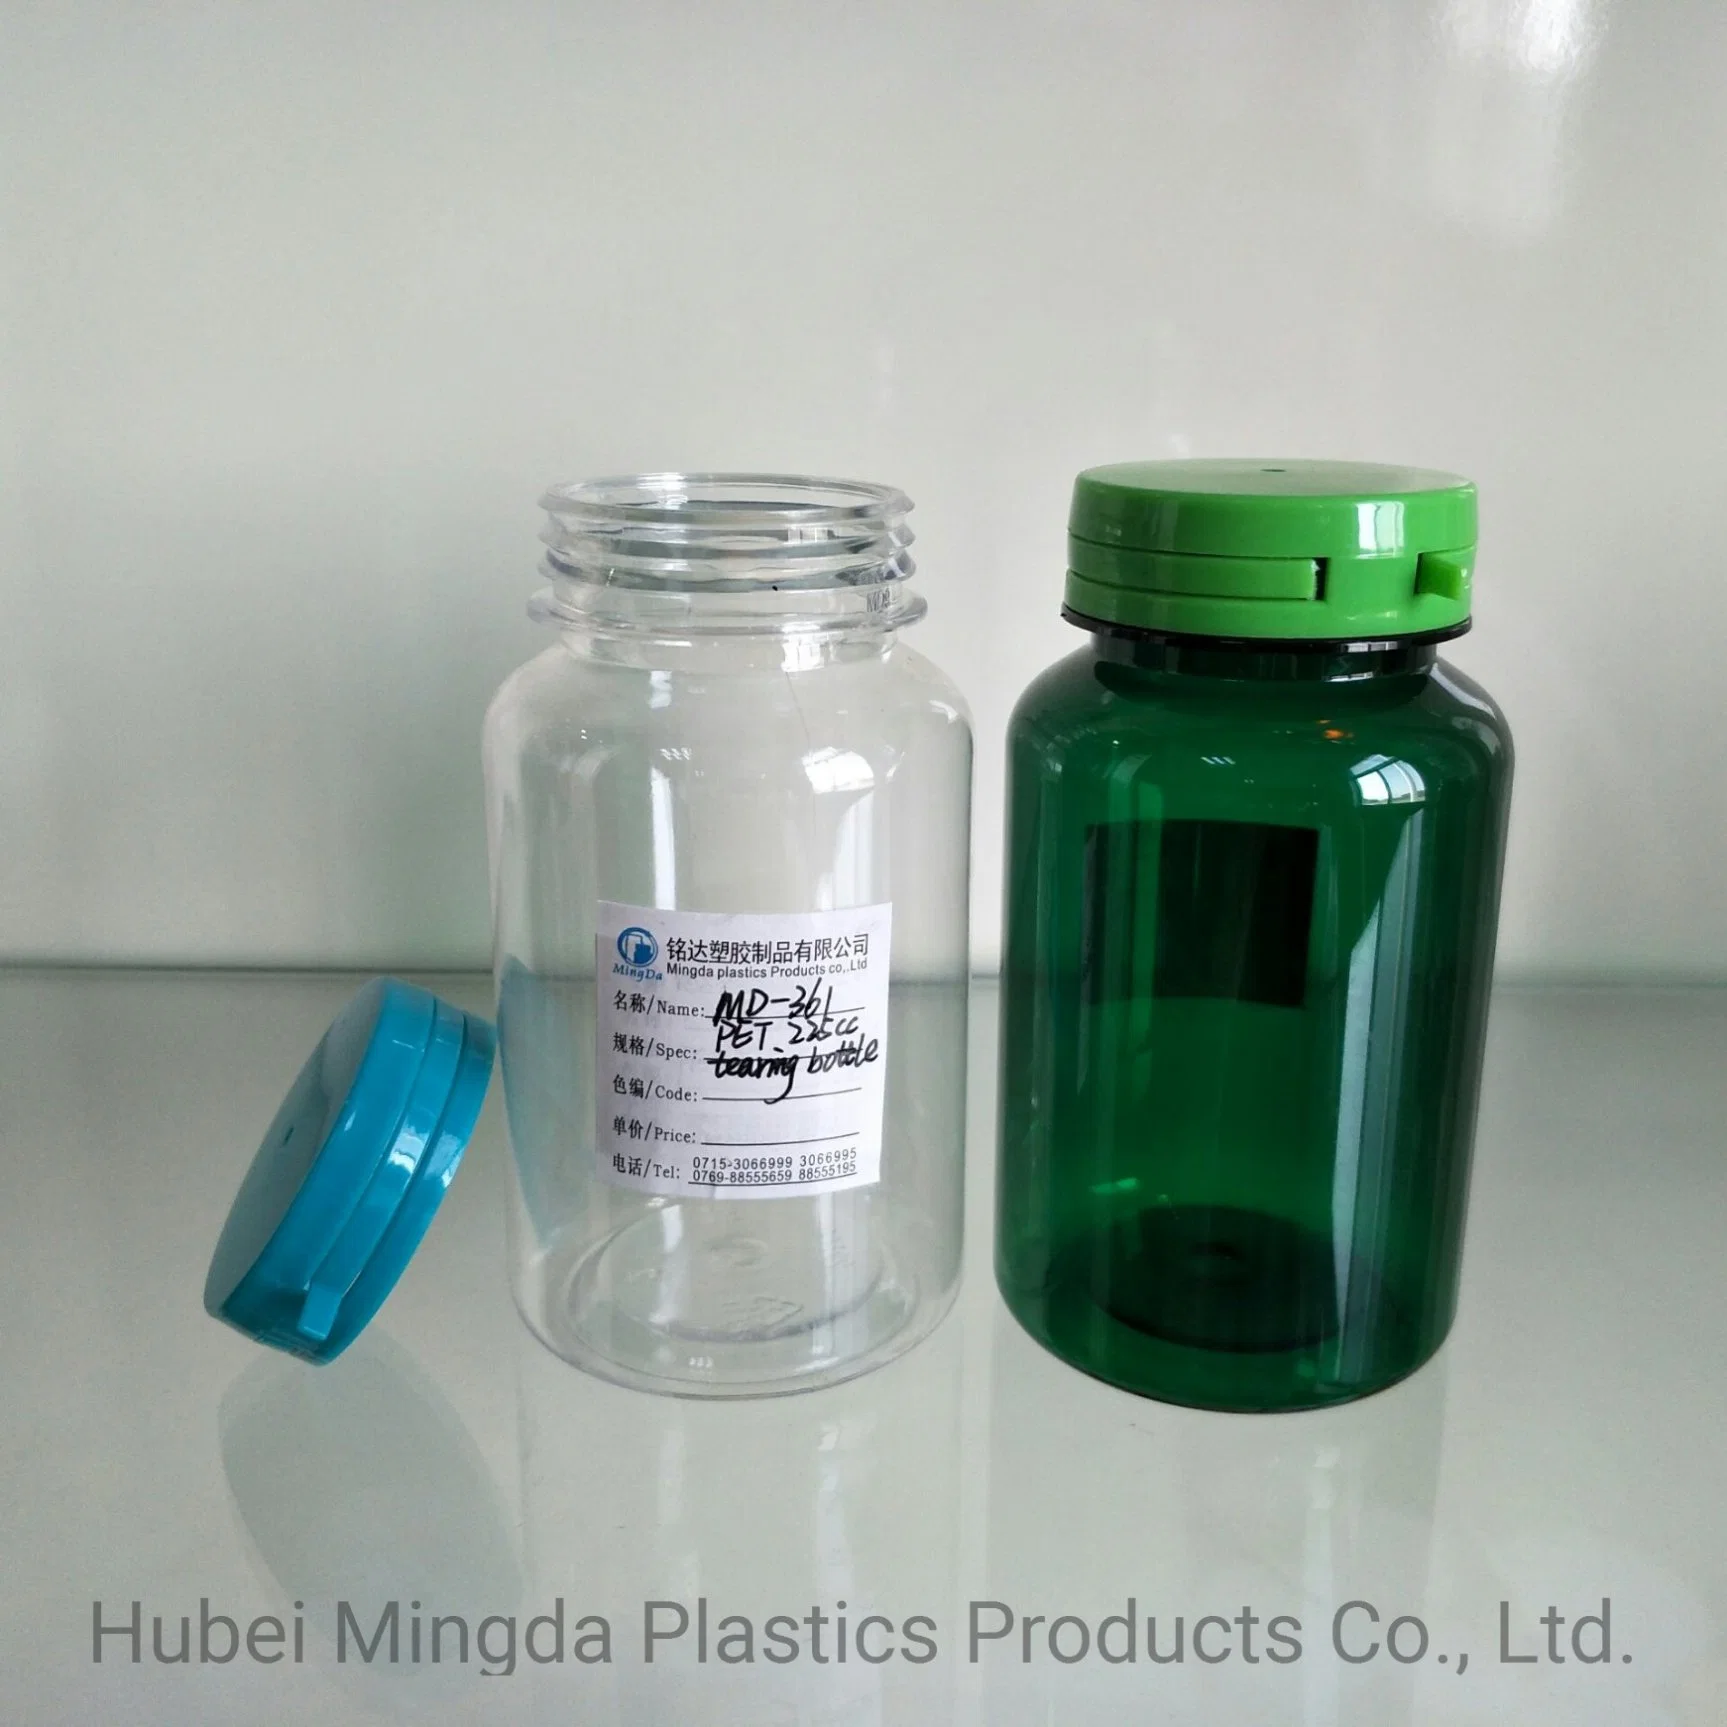 PET/HDPE MD-361 زجاجة بلاستيكية سعة 225 مل للطب/الطعام/منتجات الرعاية الصحية التعبئة والتغليف